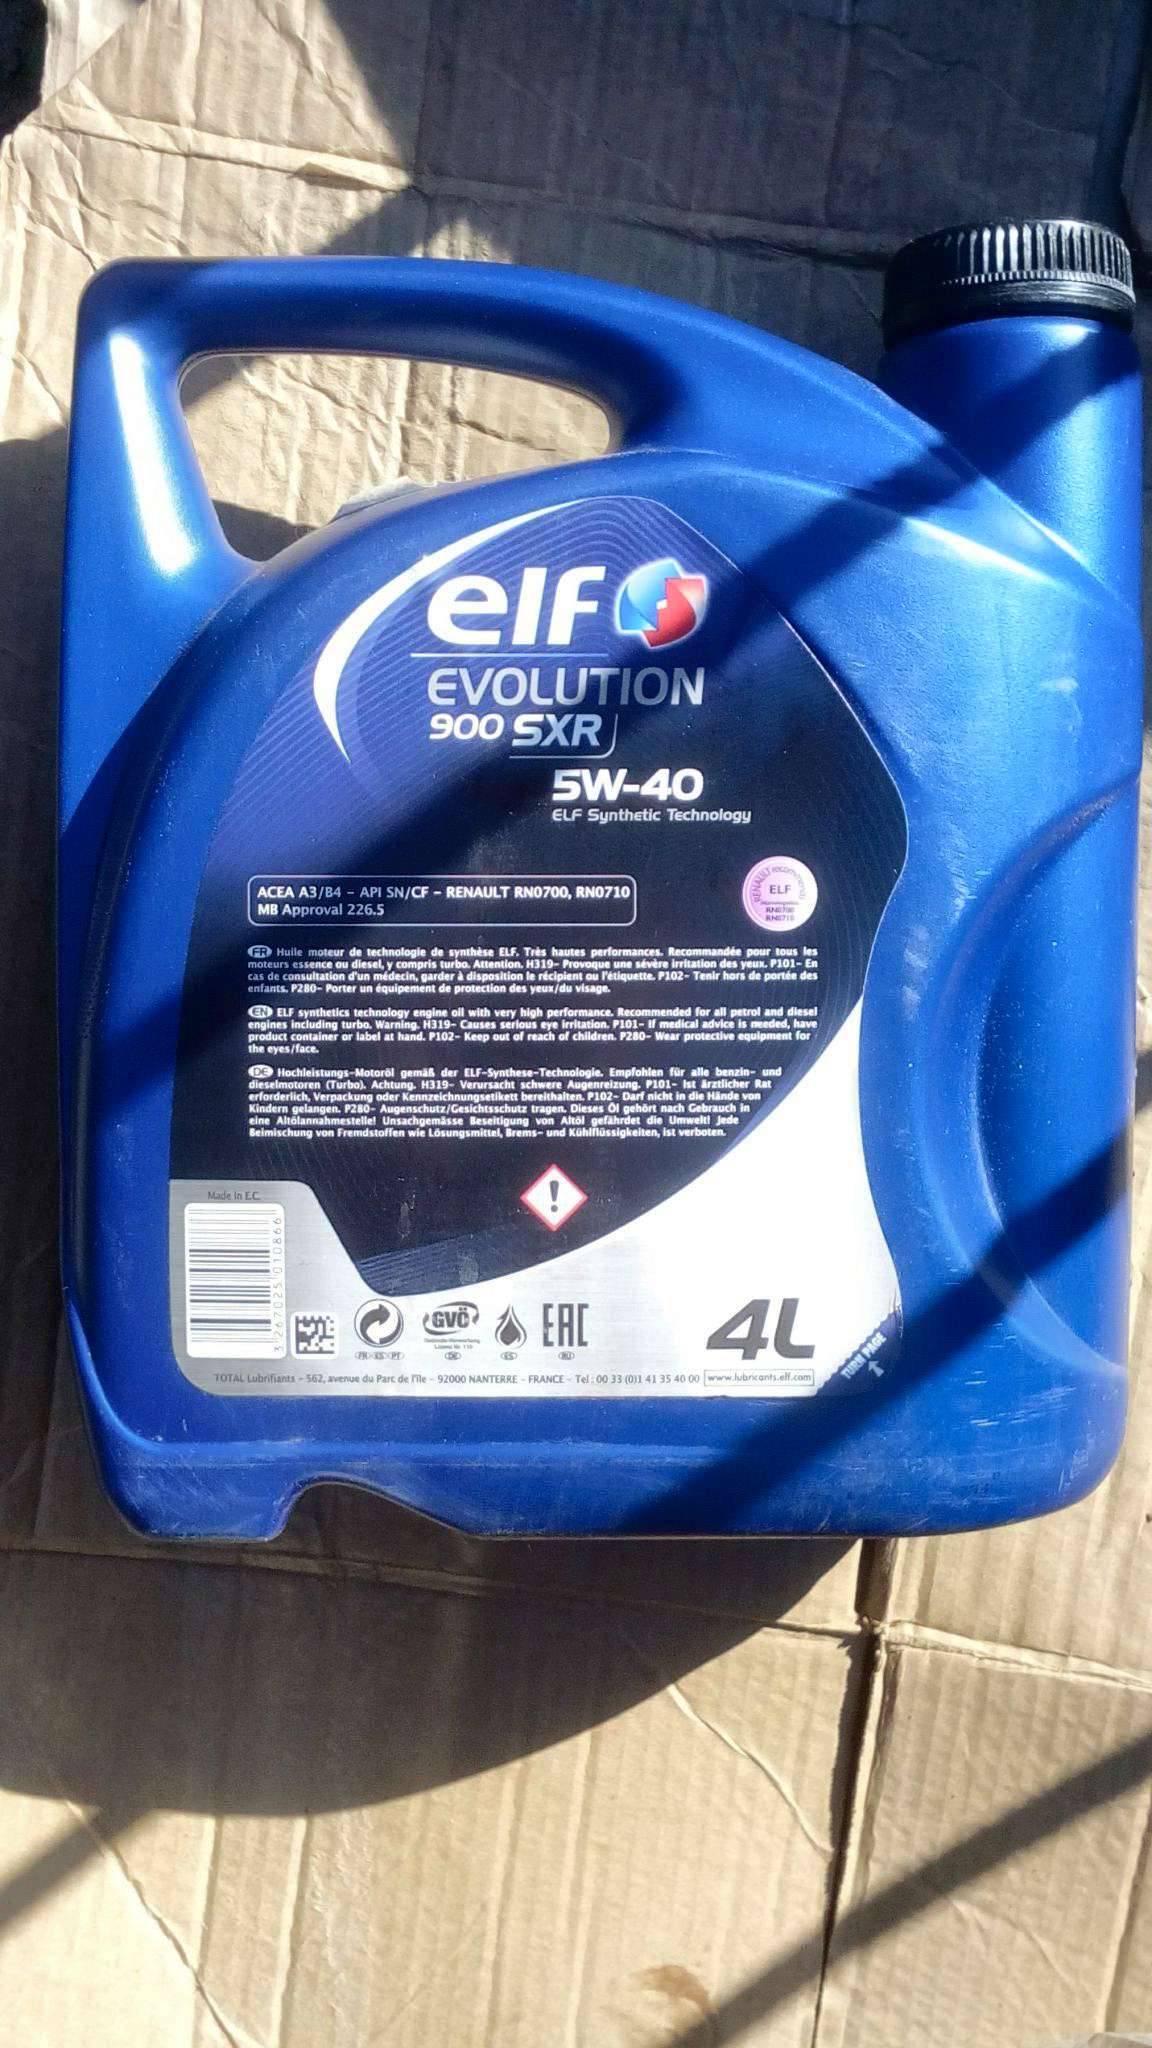 Elf evolution 900 nf 5w-40 синтетическое масло, характеристики и отзывы